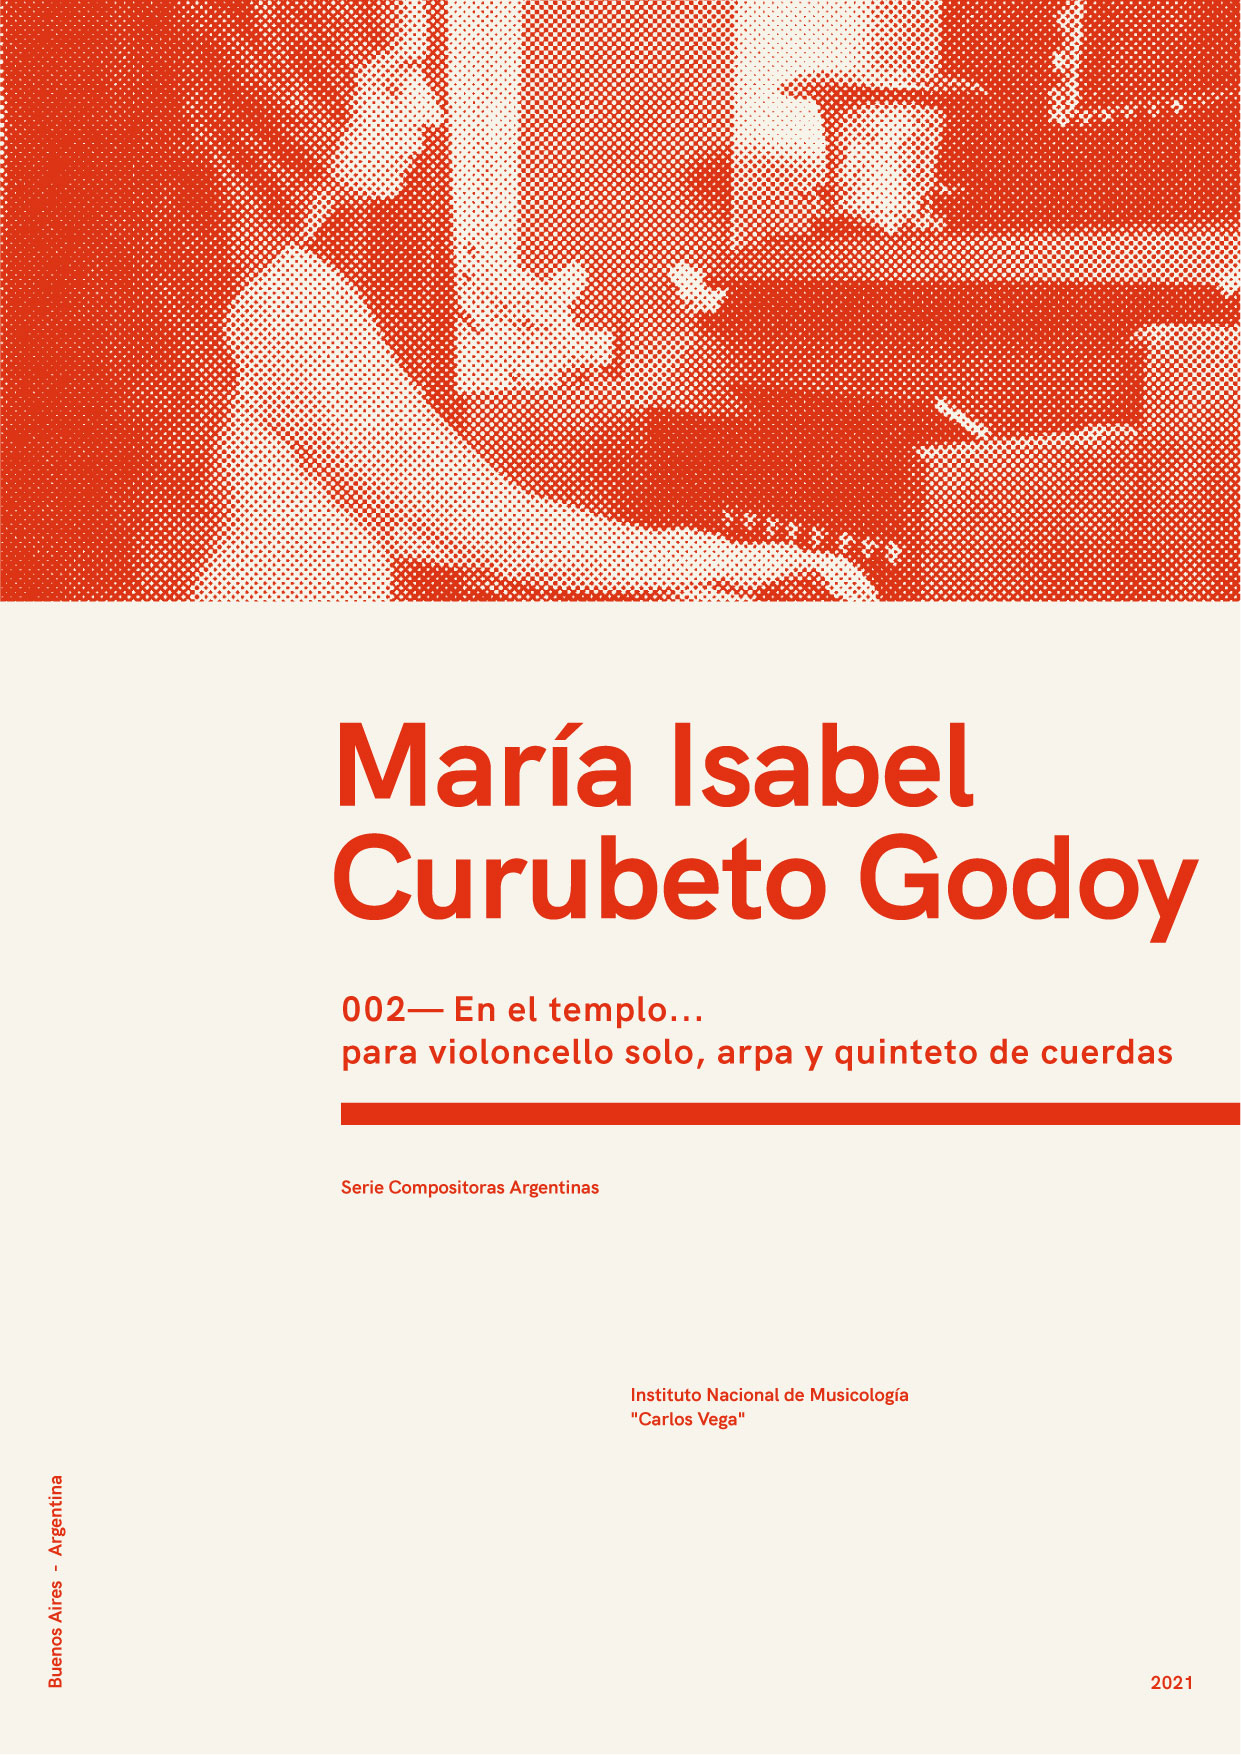 María Isabel Curubeto Godoy